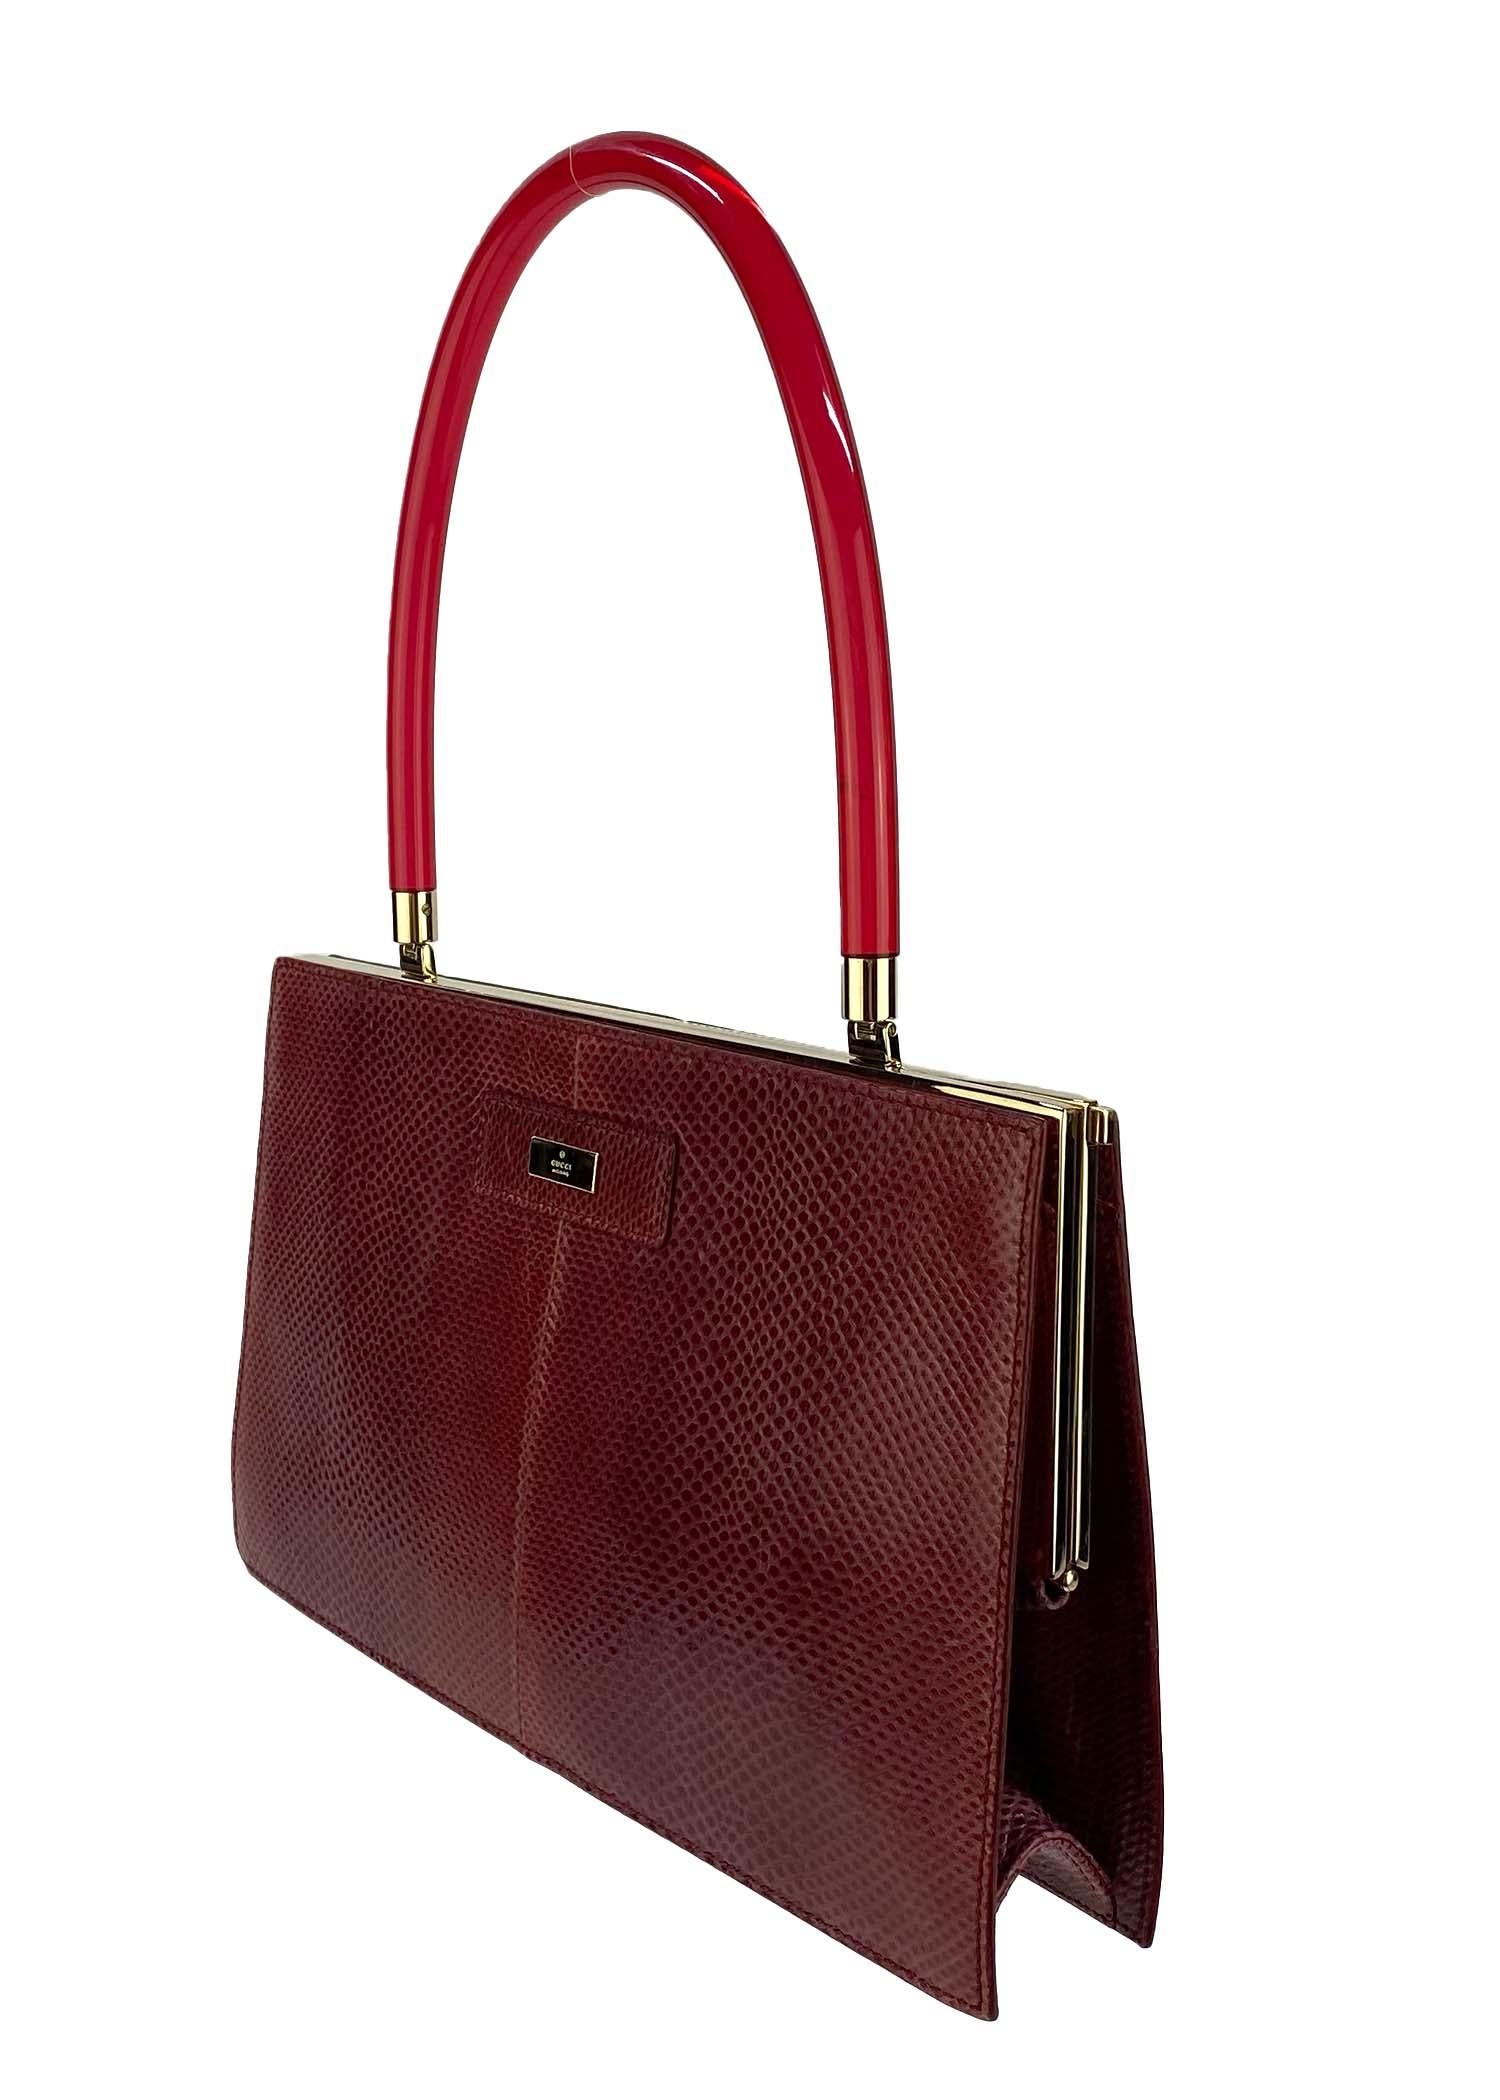 Présentation d'un rare sac Gucci en peau de lézard rouge foncé, conçu par Tom Ford. Ce magnifique sac est fabriqué principalement en peau de serpent Karung teintée en rouge et est complété par des accents dorés et une poignée en lucite rouge